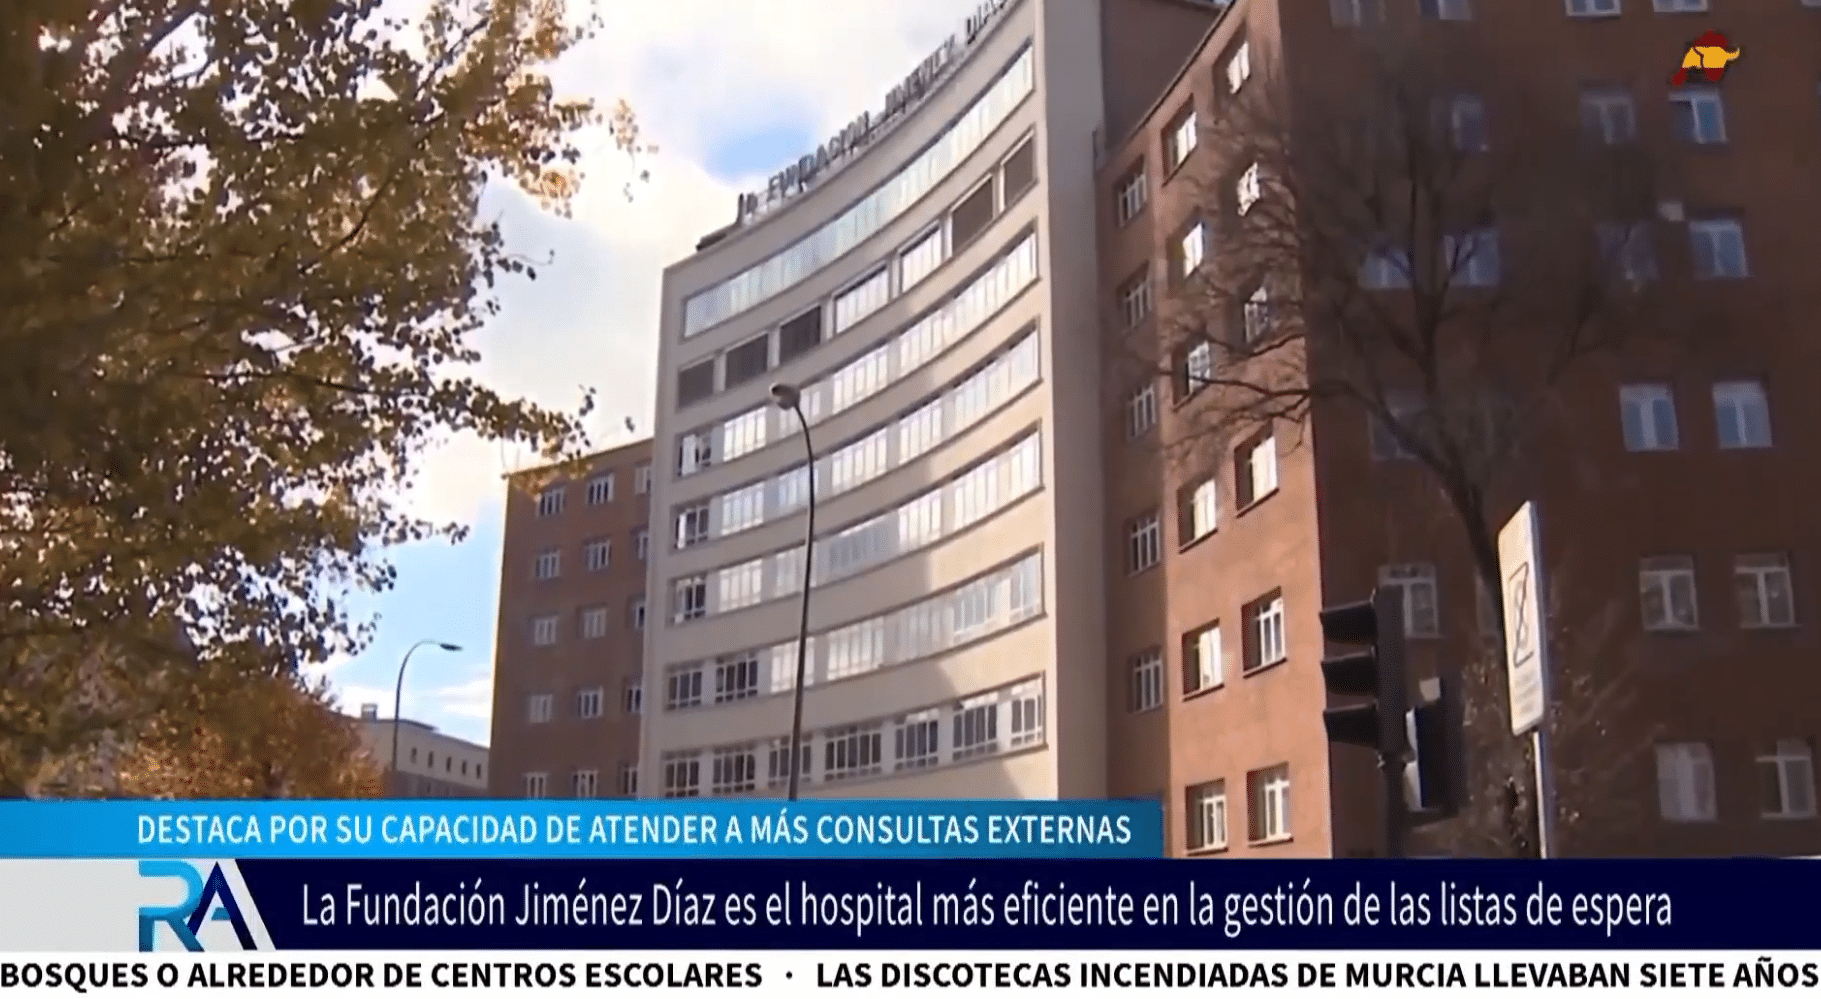 La Fundación Jiménez Díaz: el centro hospitalario más eficiente en gestión de listas de espera